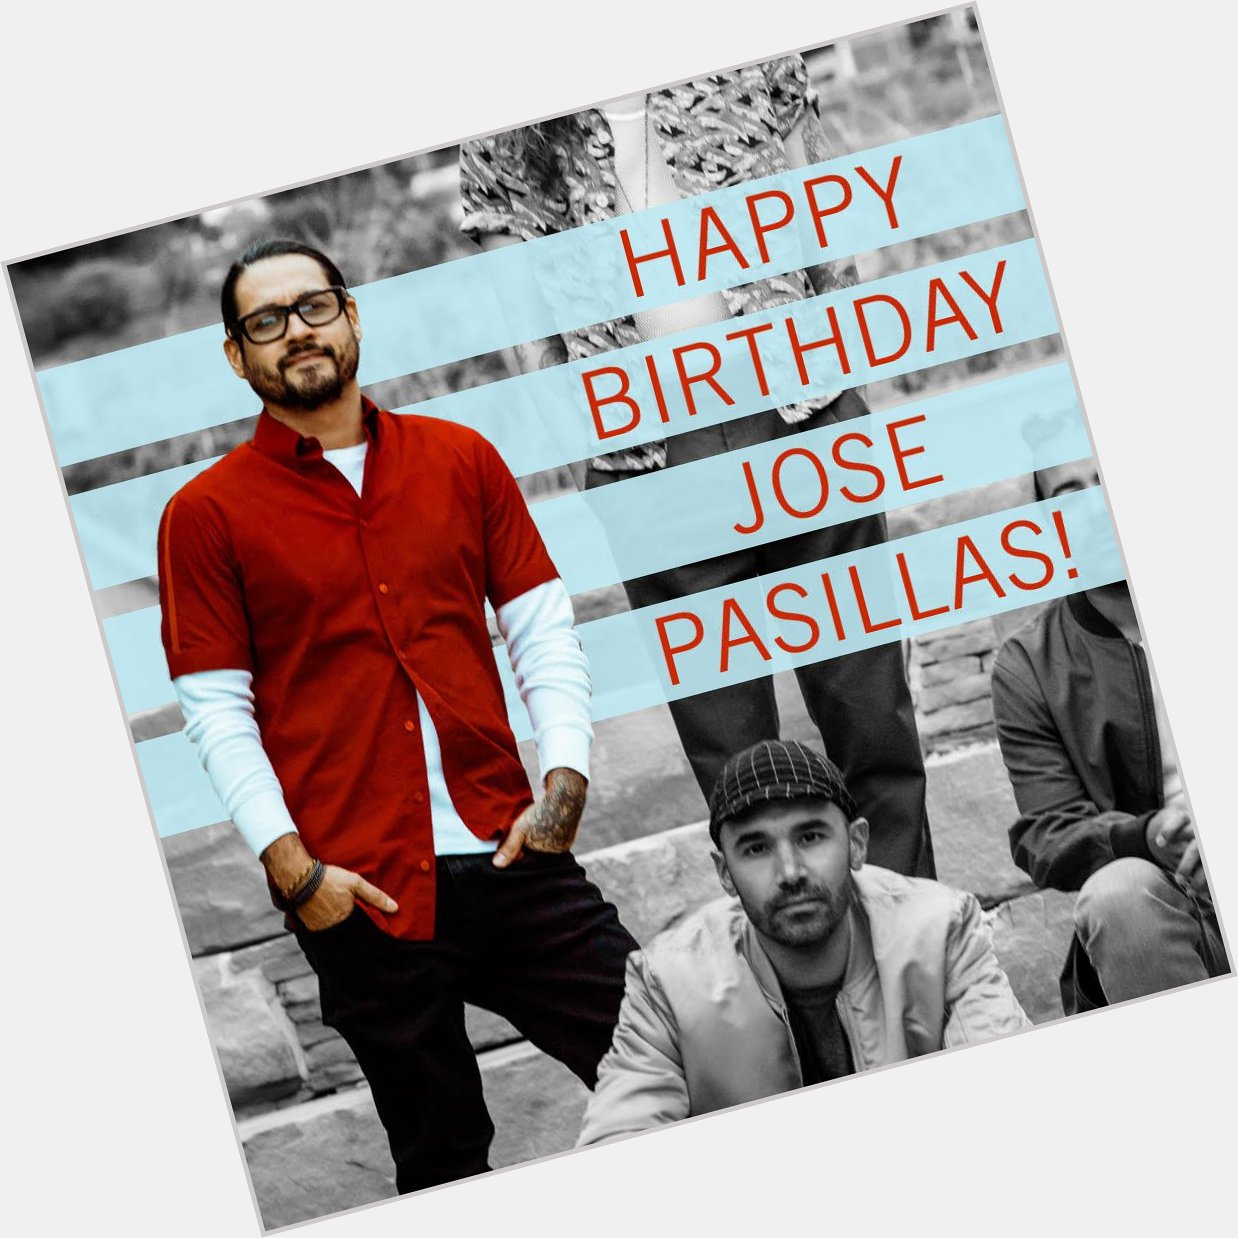 Happy birthday to Jose Pasillas of 